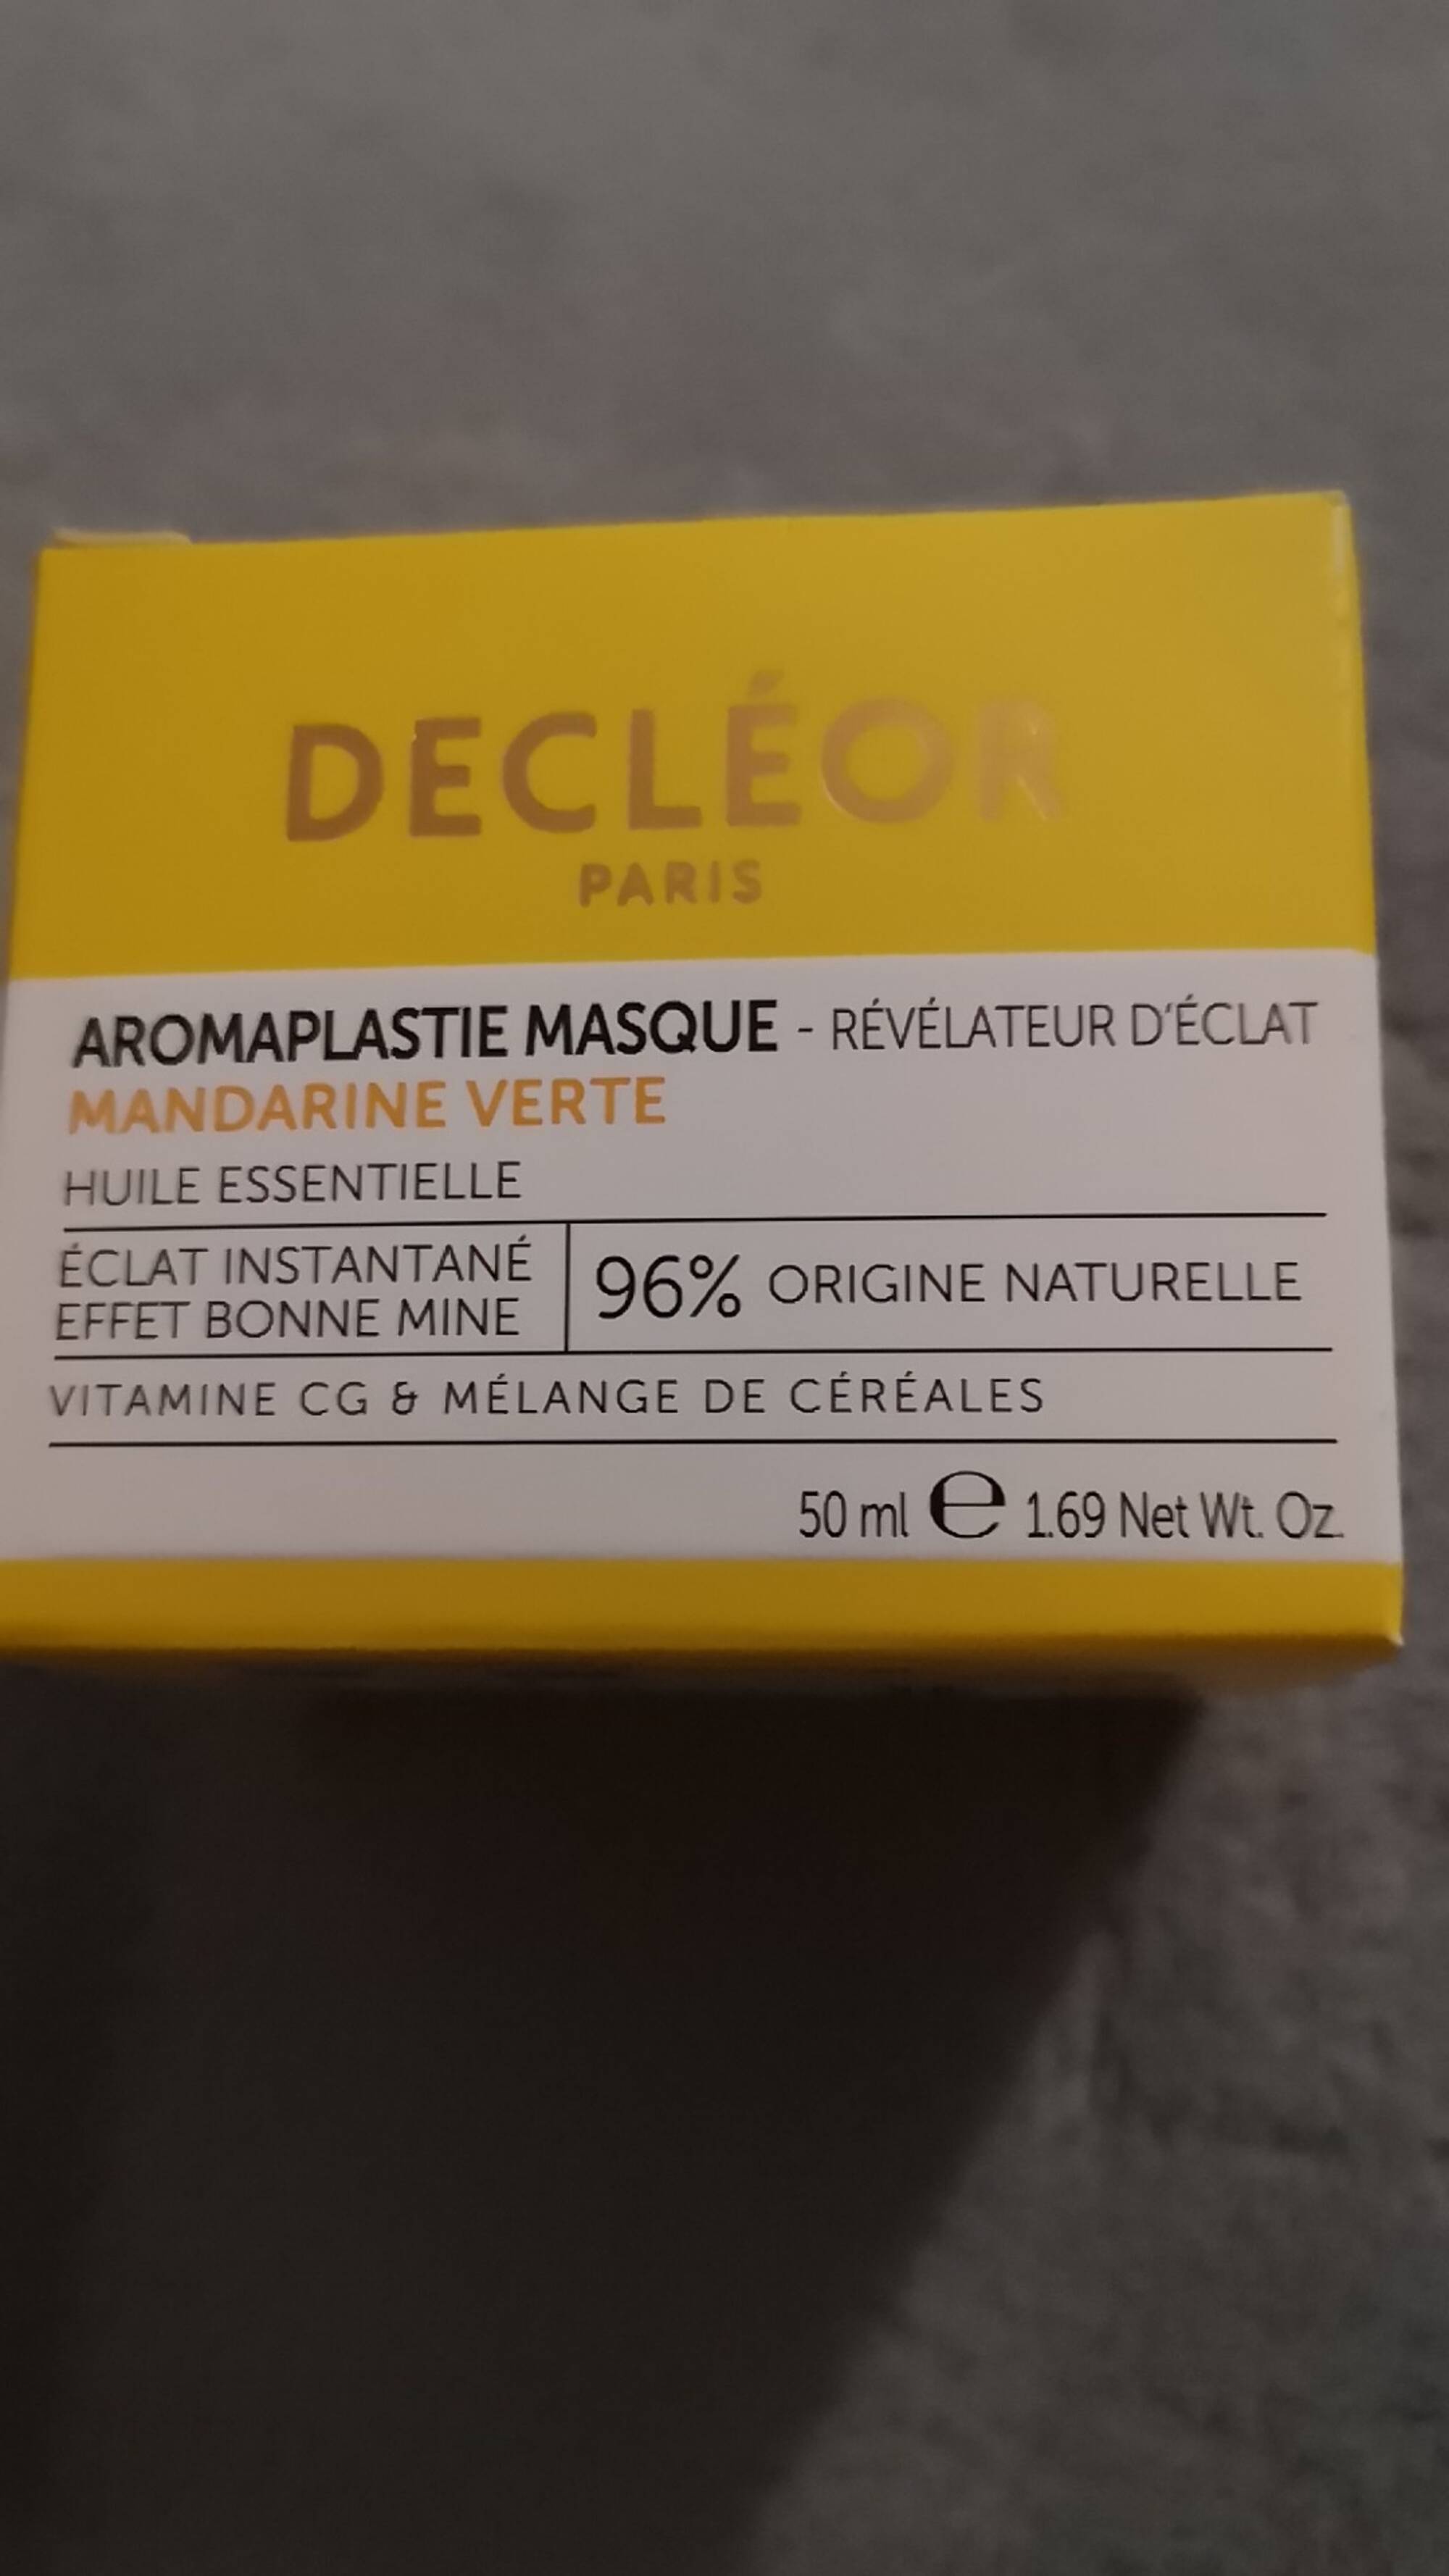 DECLÉOR PARIS - Aromaplastie masque - Revelateur d'éclat mandarine verte